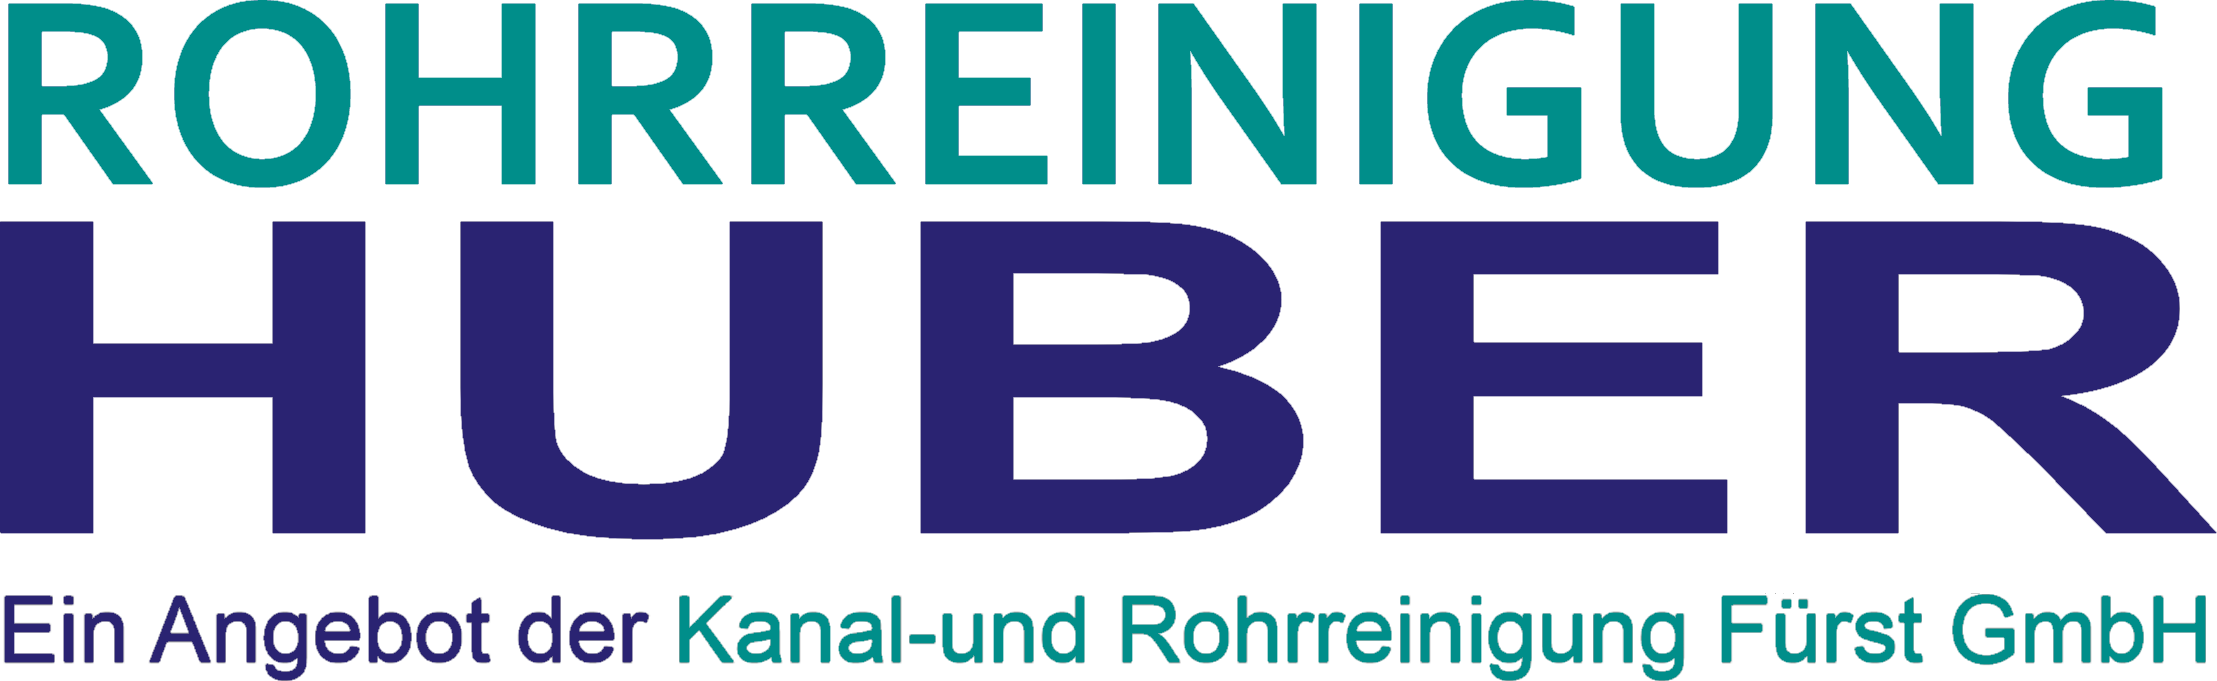 Rohrreinigung Huber - Rohrreinigung Hirschhorn/Pfalz